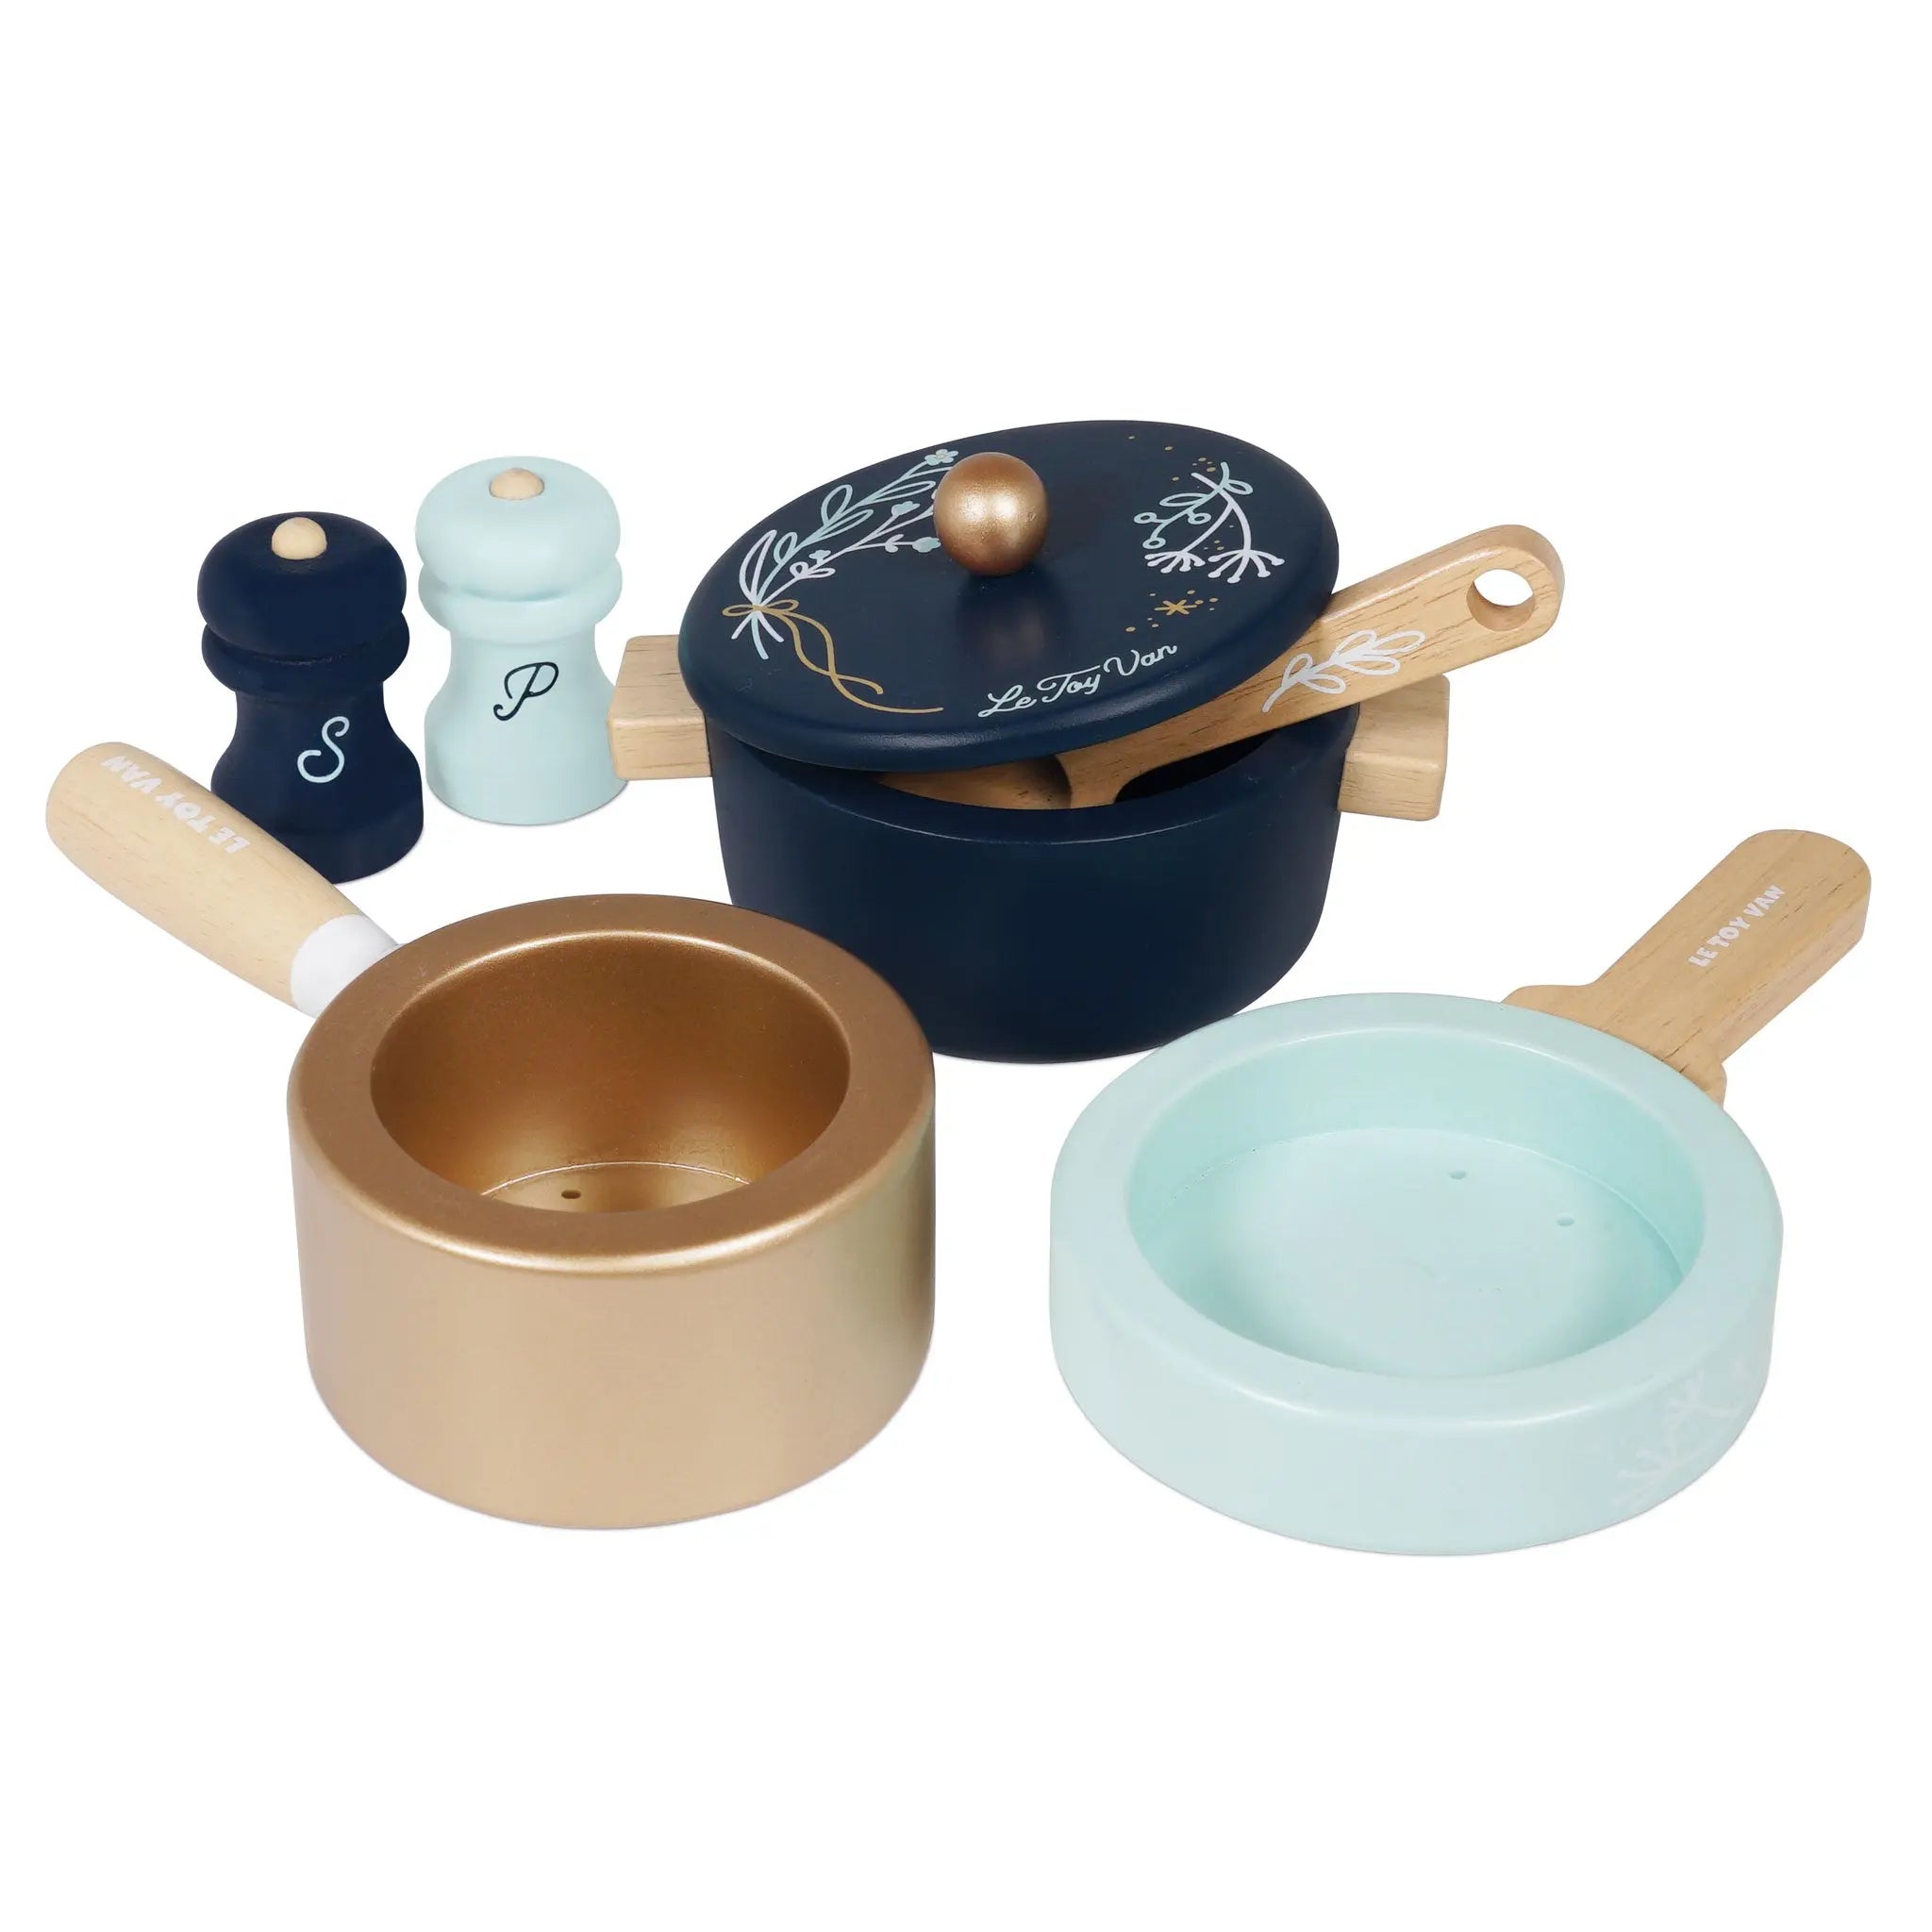 Pots and Pans-Wooden toys & more-Le Toy Van-Blue Almonds-London-South Kensington